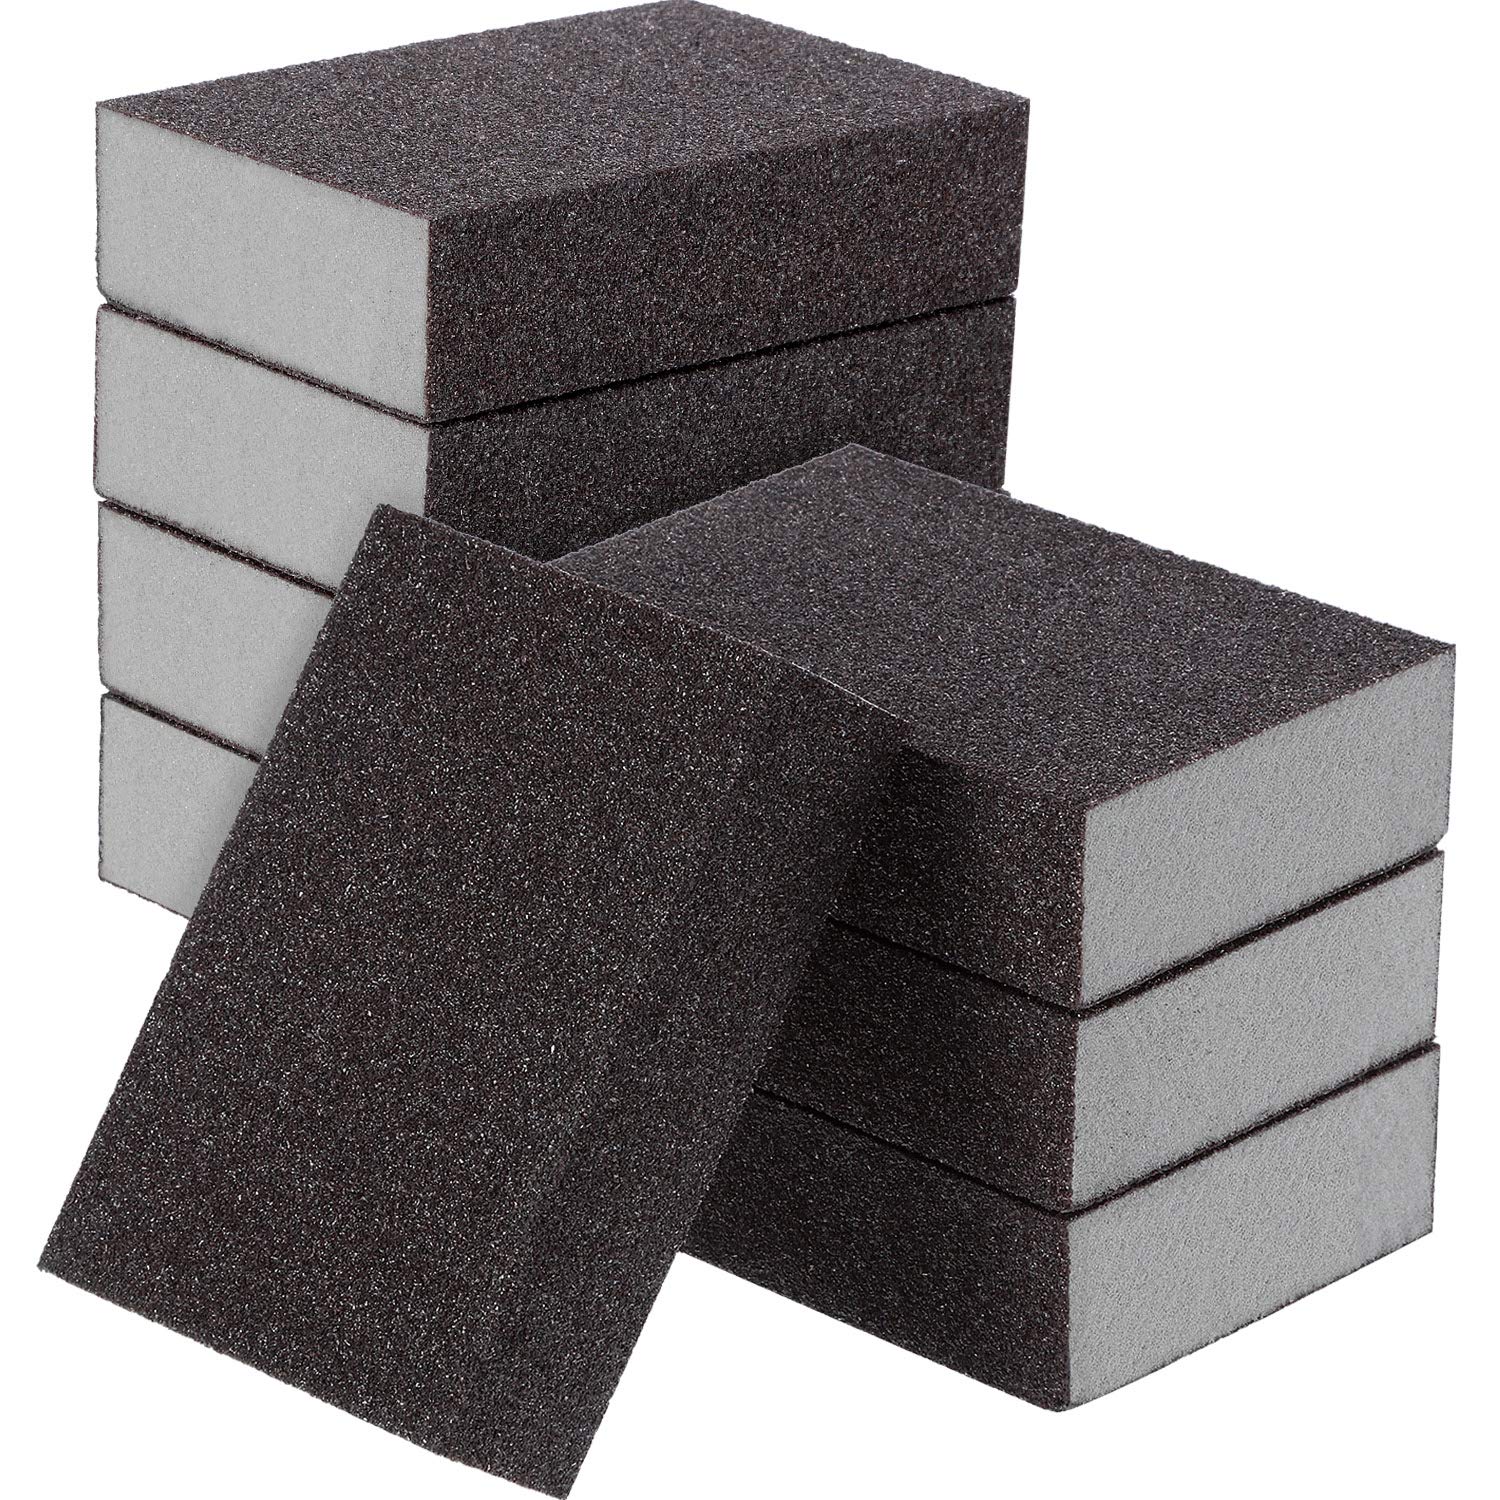 sanding blocks